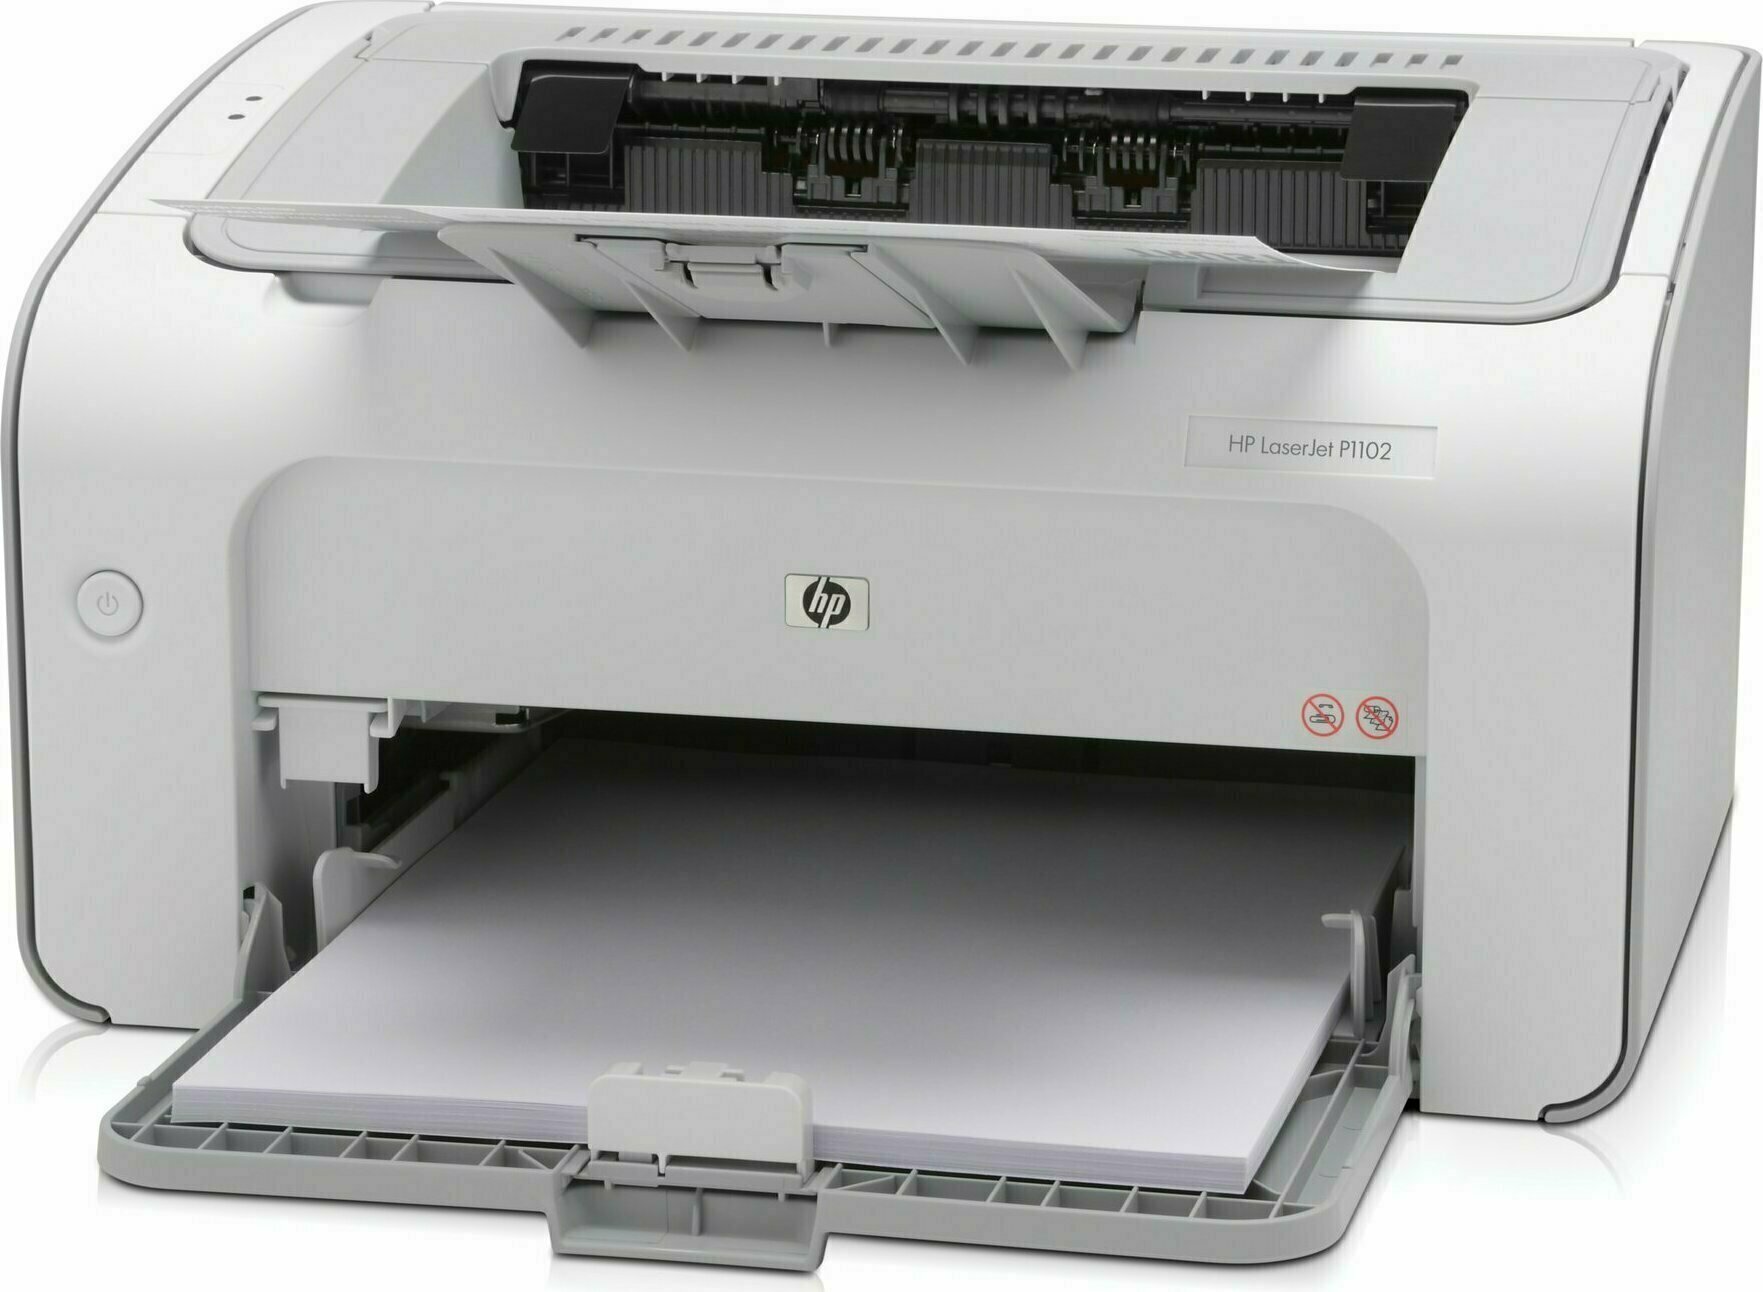 HP LaserJet Pro P1102 | Full Specifications